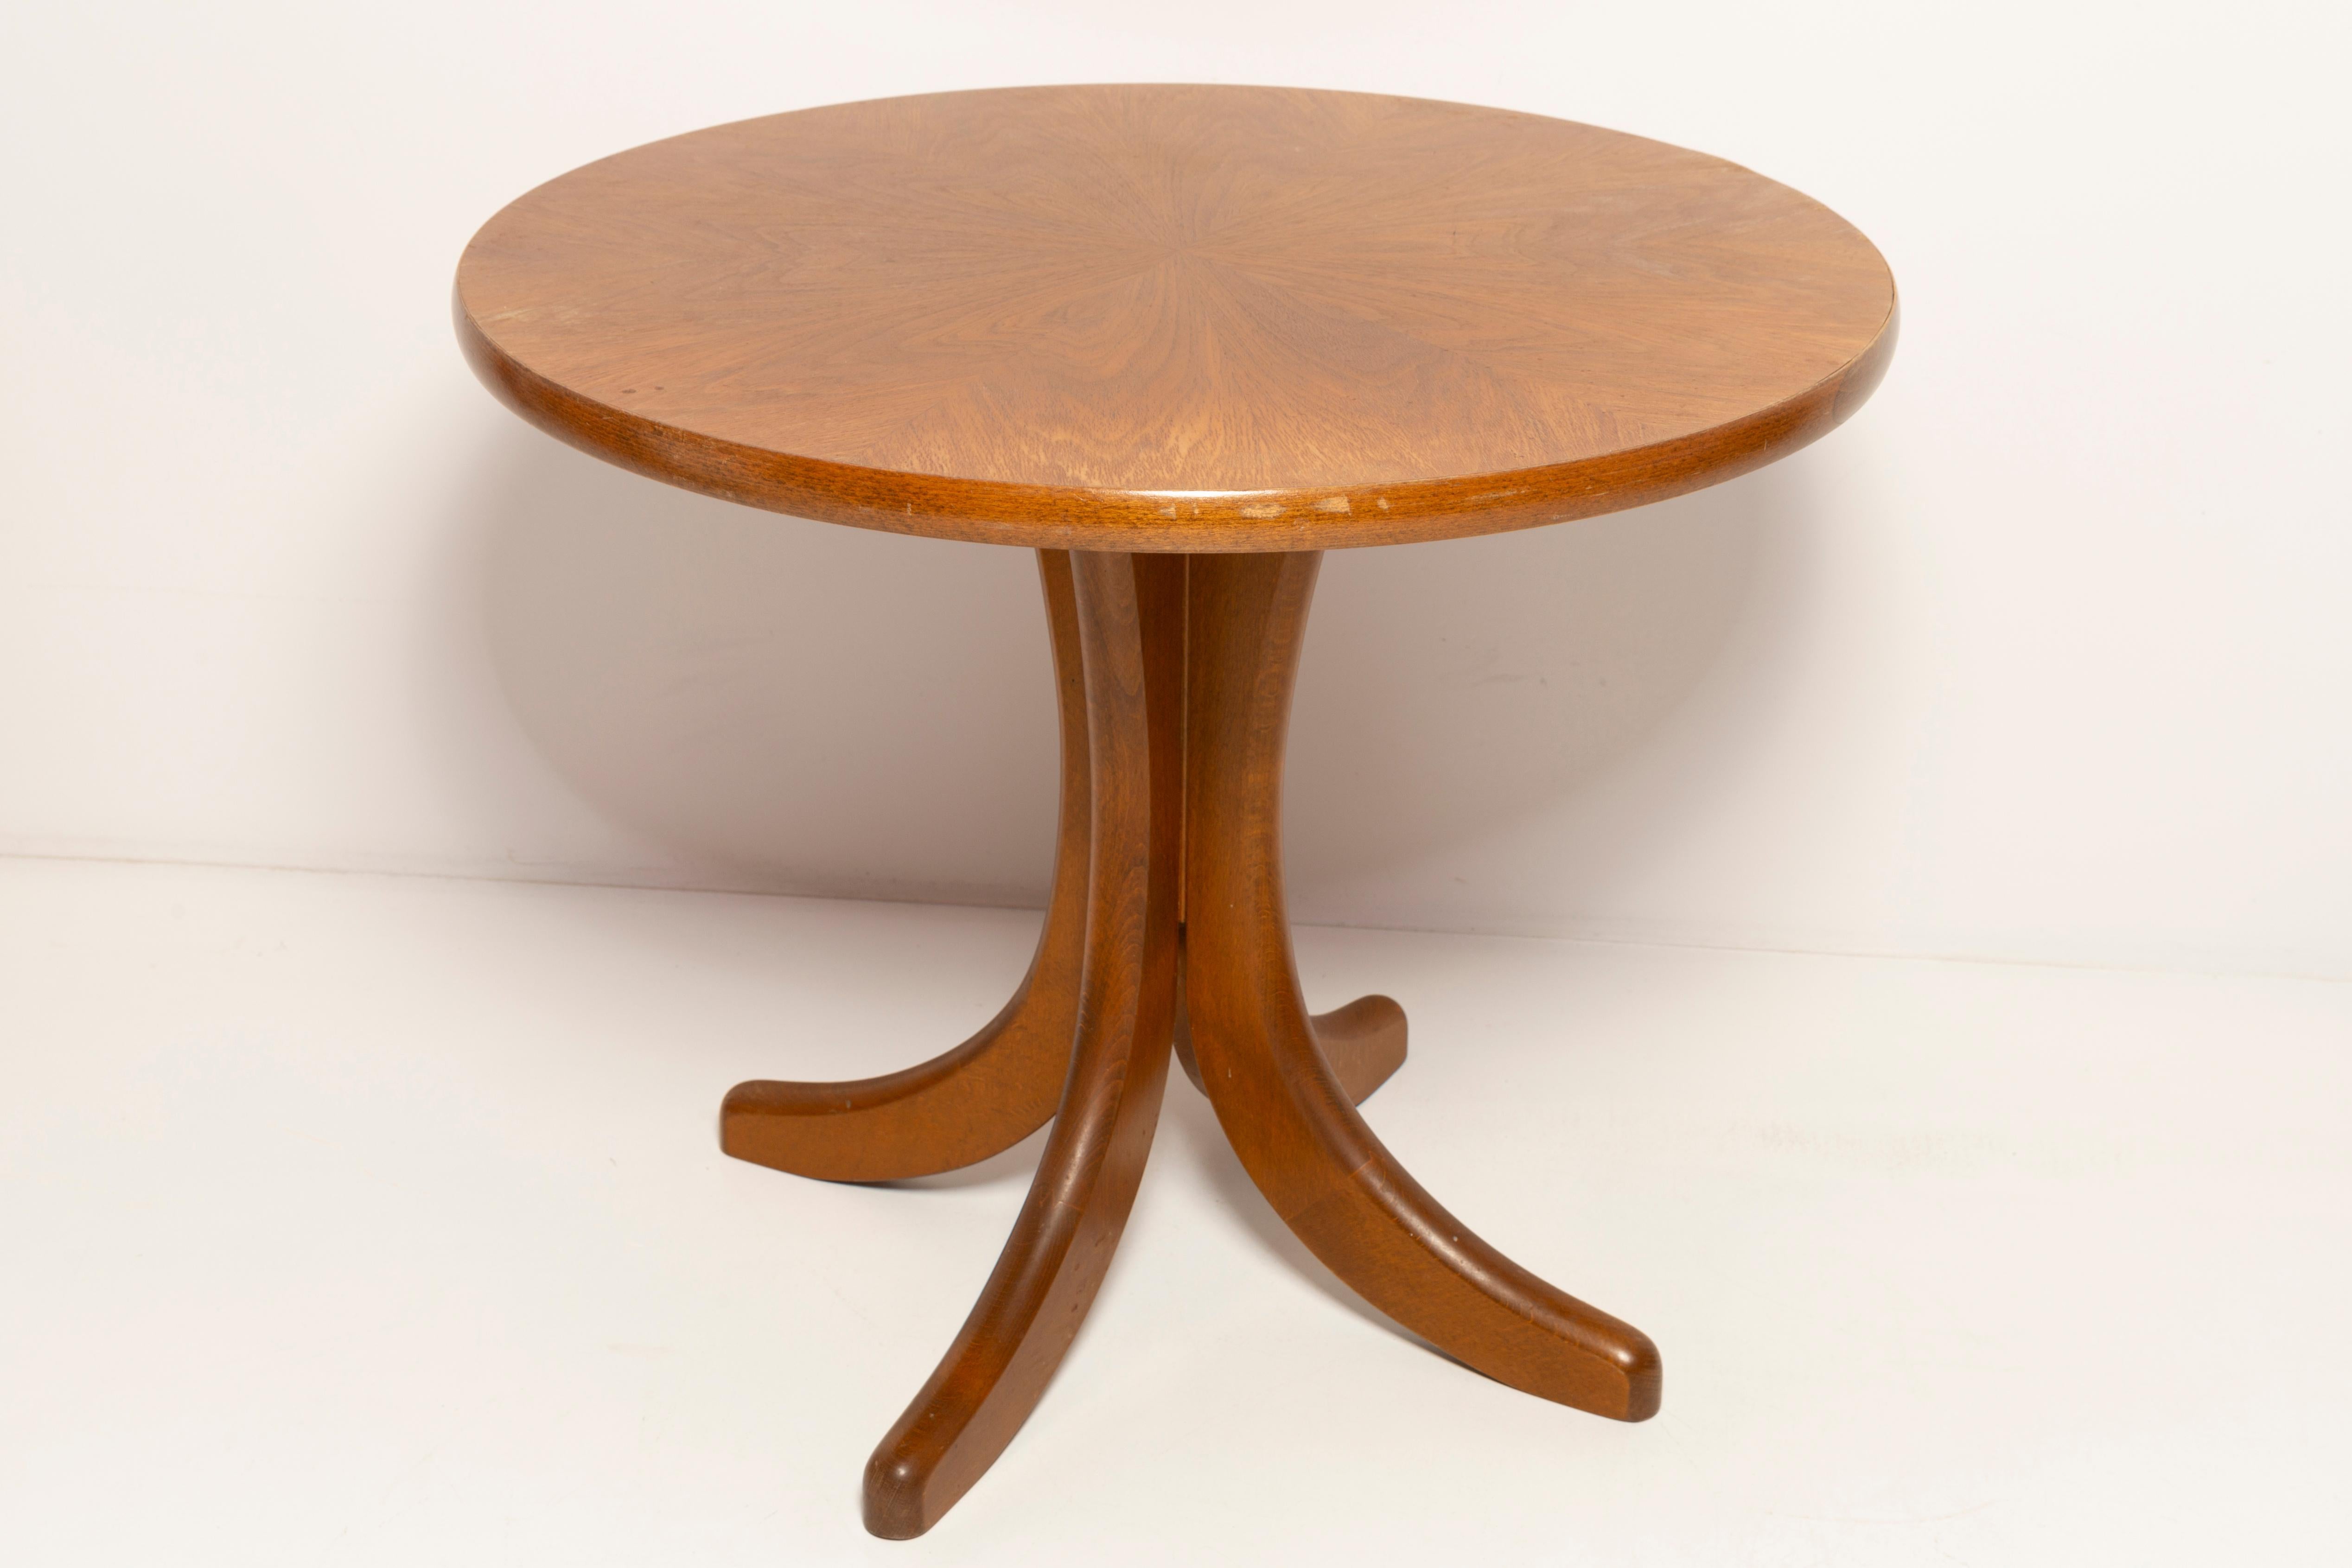 Table basse des années 1960. Il a été fabriqué en Pologne dans les années 1960. La table a été fabriquée en bois de chêne et en contreplaqué de placage, elle a été rafraîchie. État vintage d'origine.